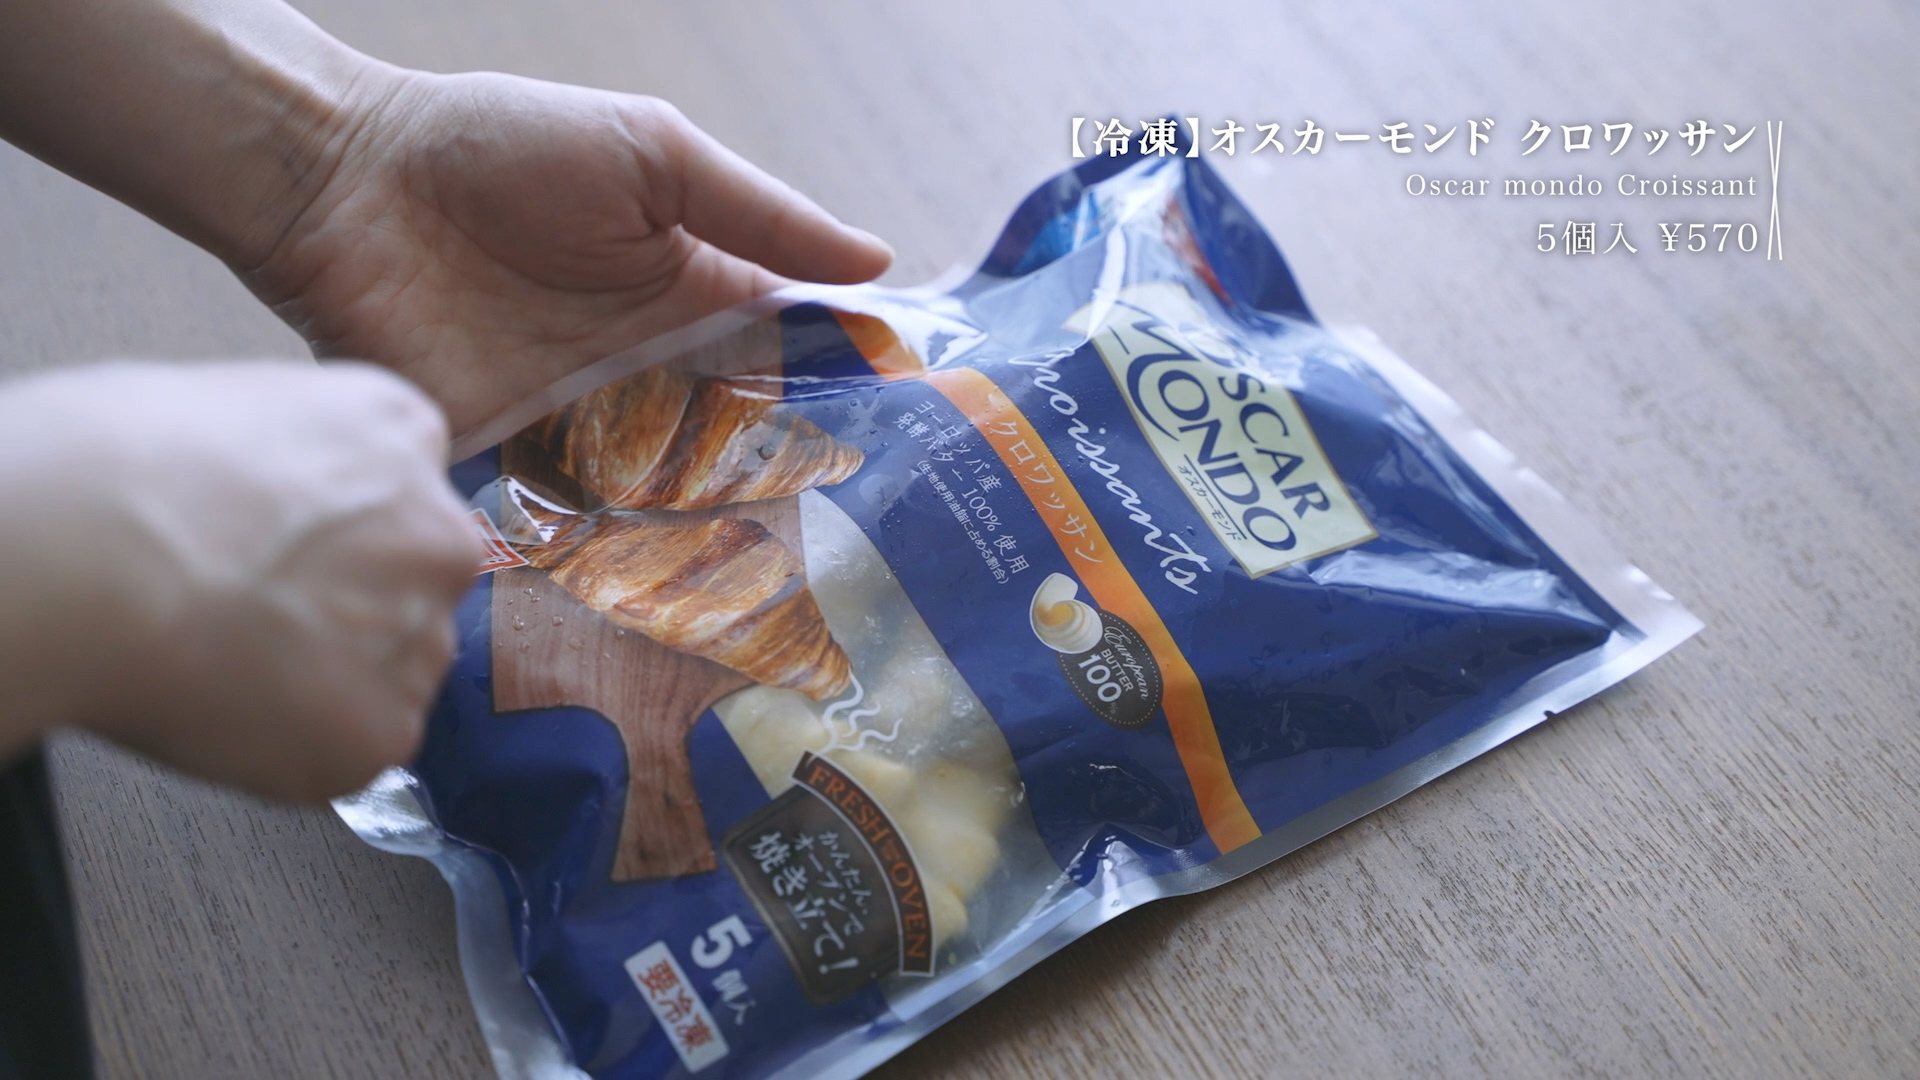 【冷凍】オスカーモンド クロワッサン 5個入り ¥570